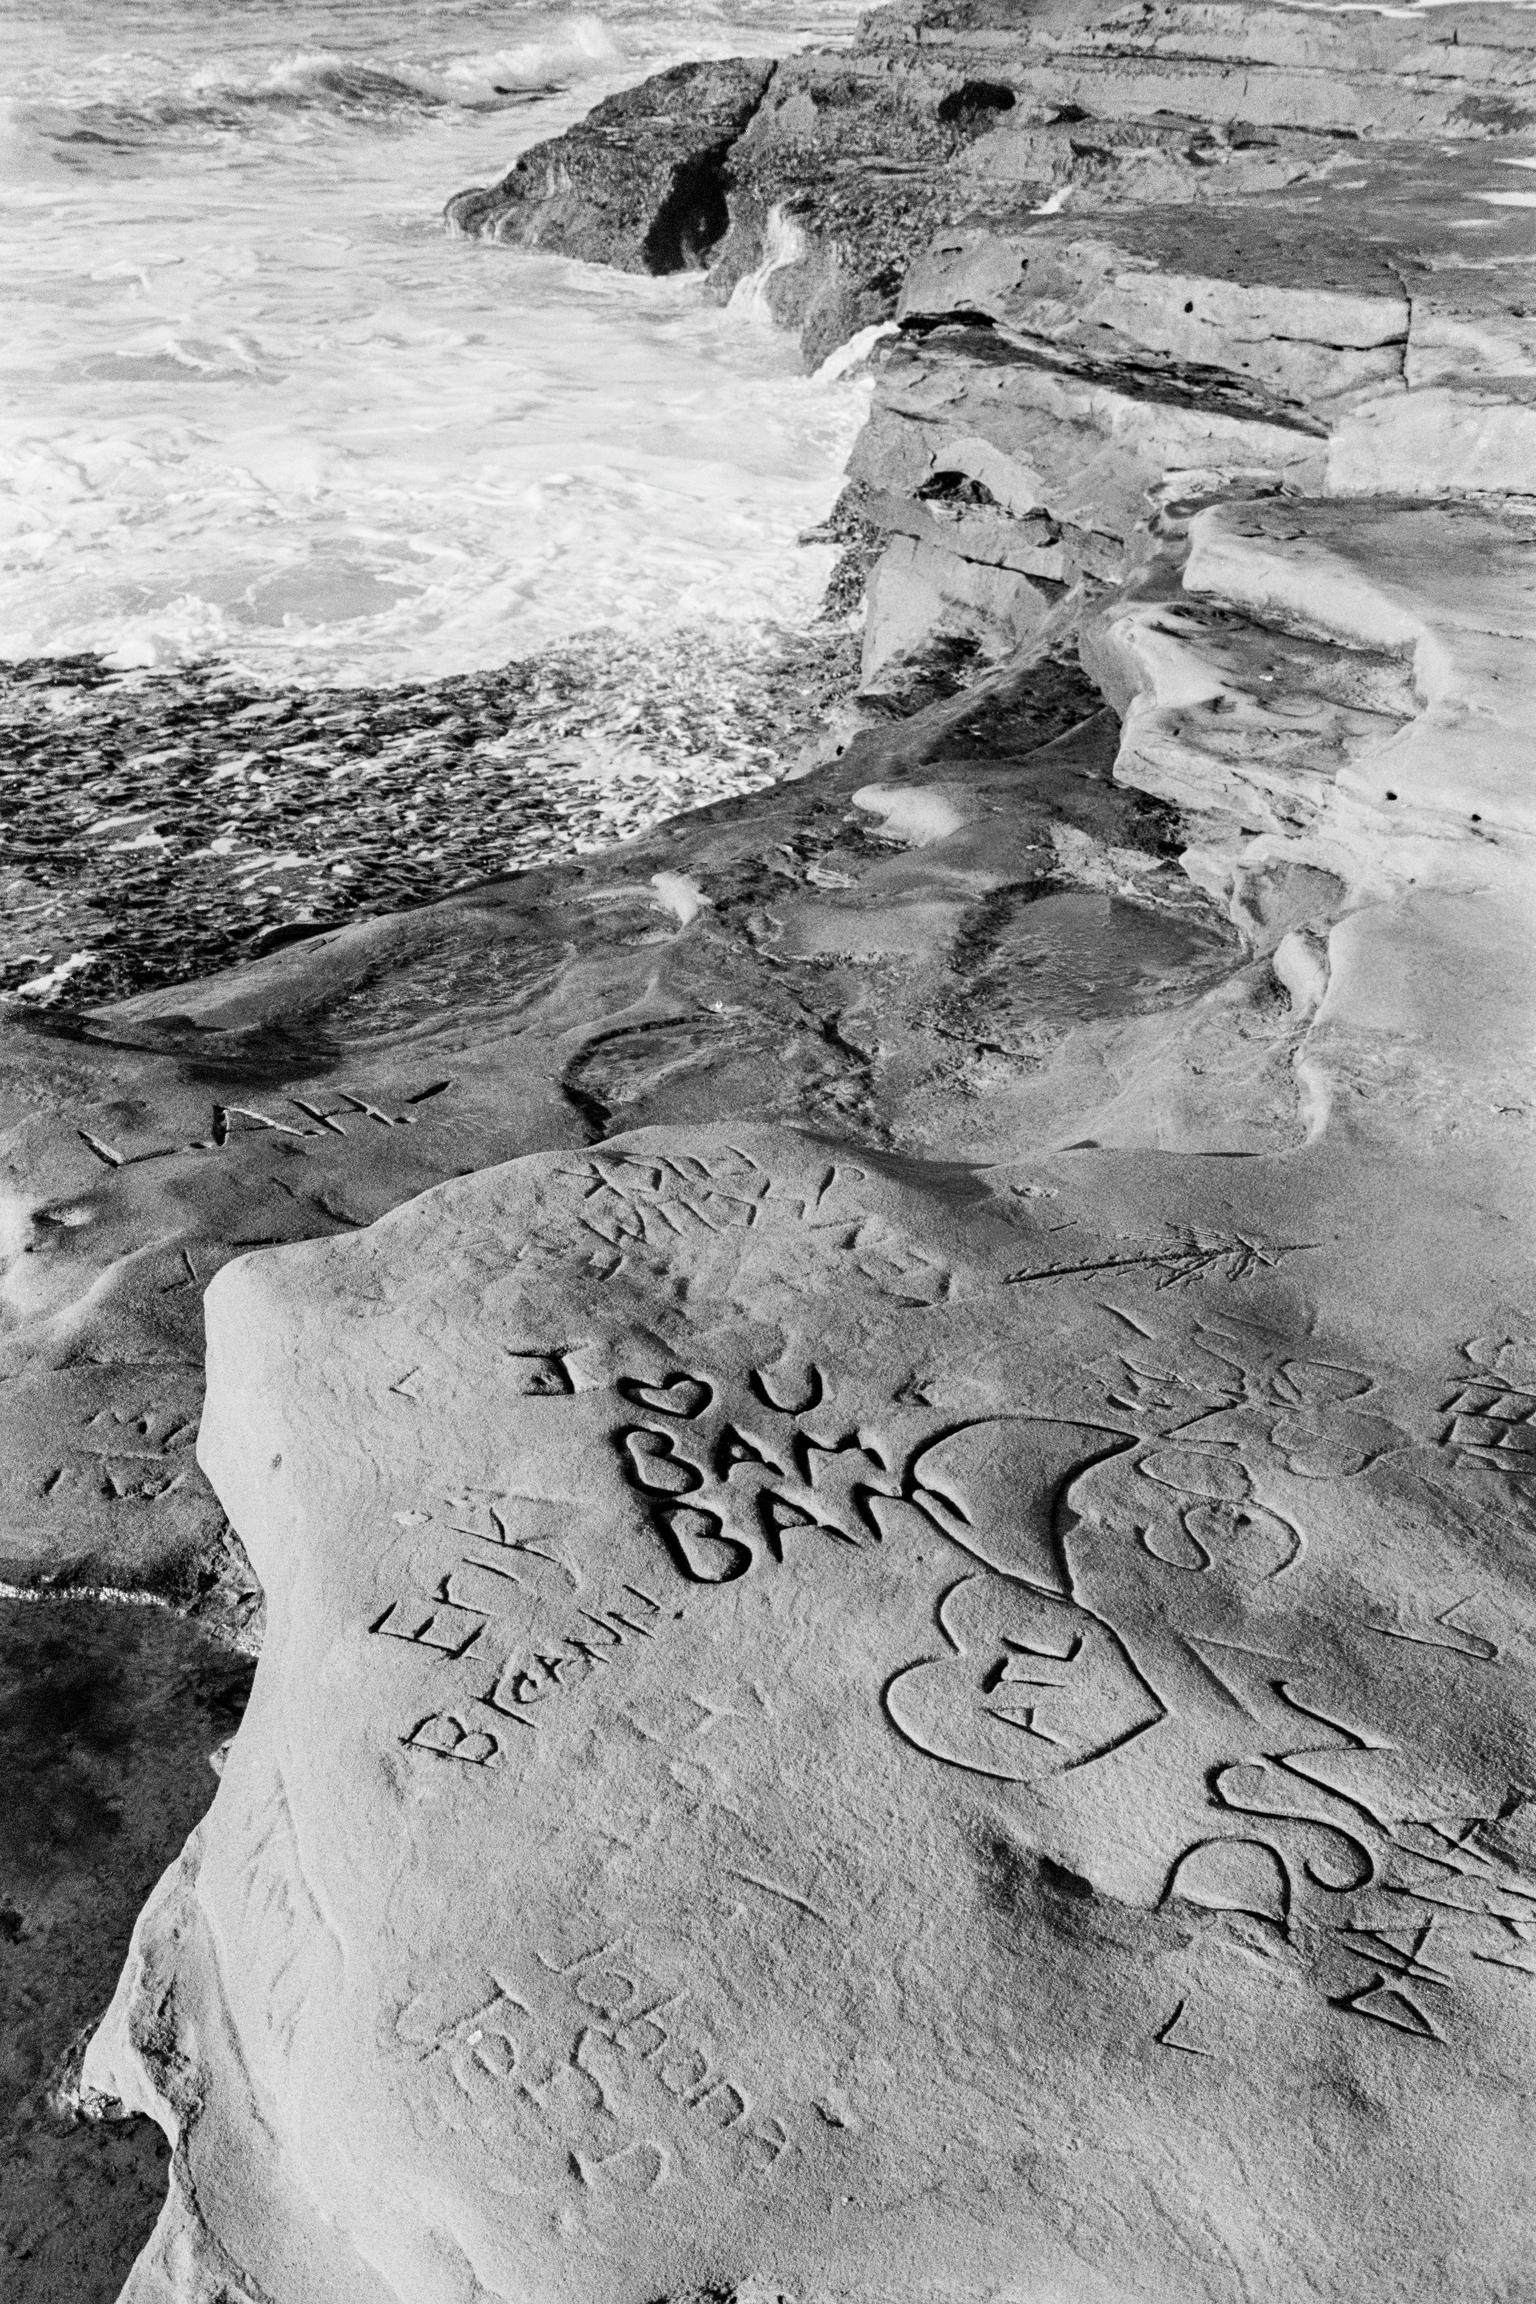 Misson Beach, grafitti carvings on beach rocks. San Diego. California, USA